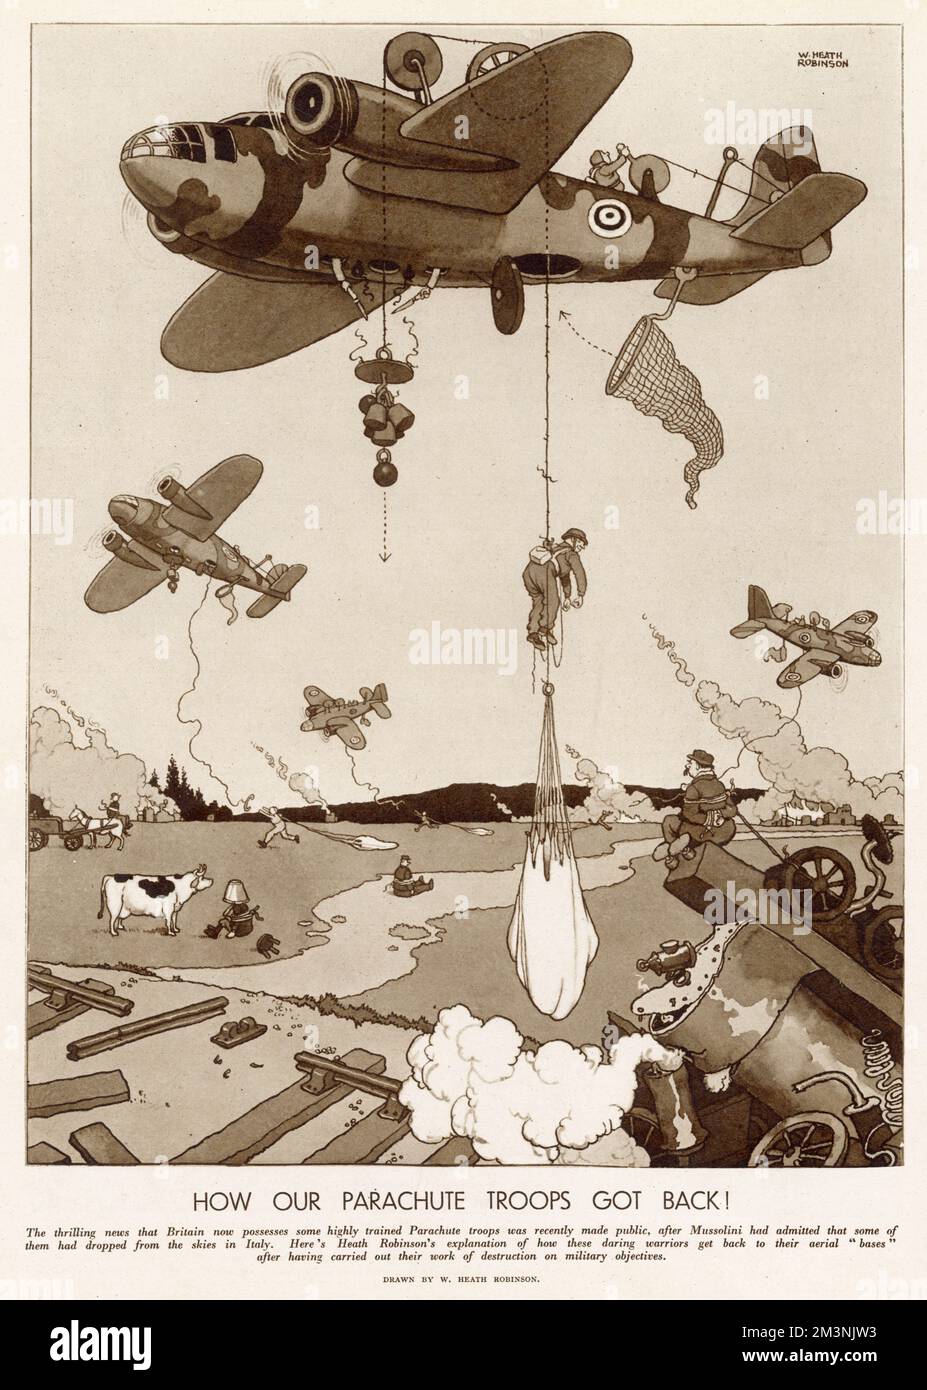 Britische Soldaten sind mit dem Fallschirm in Italien gelandet. Hier ist eine Illustration von William Heath Robinson, die zeigt, wie sie zurückgekehrt sind! Stockfoto